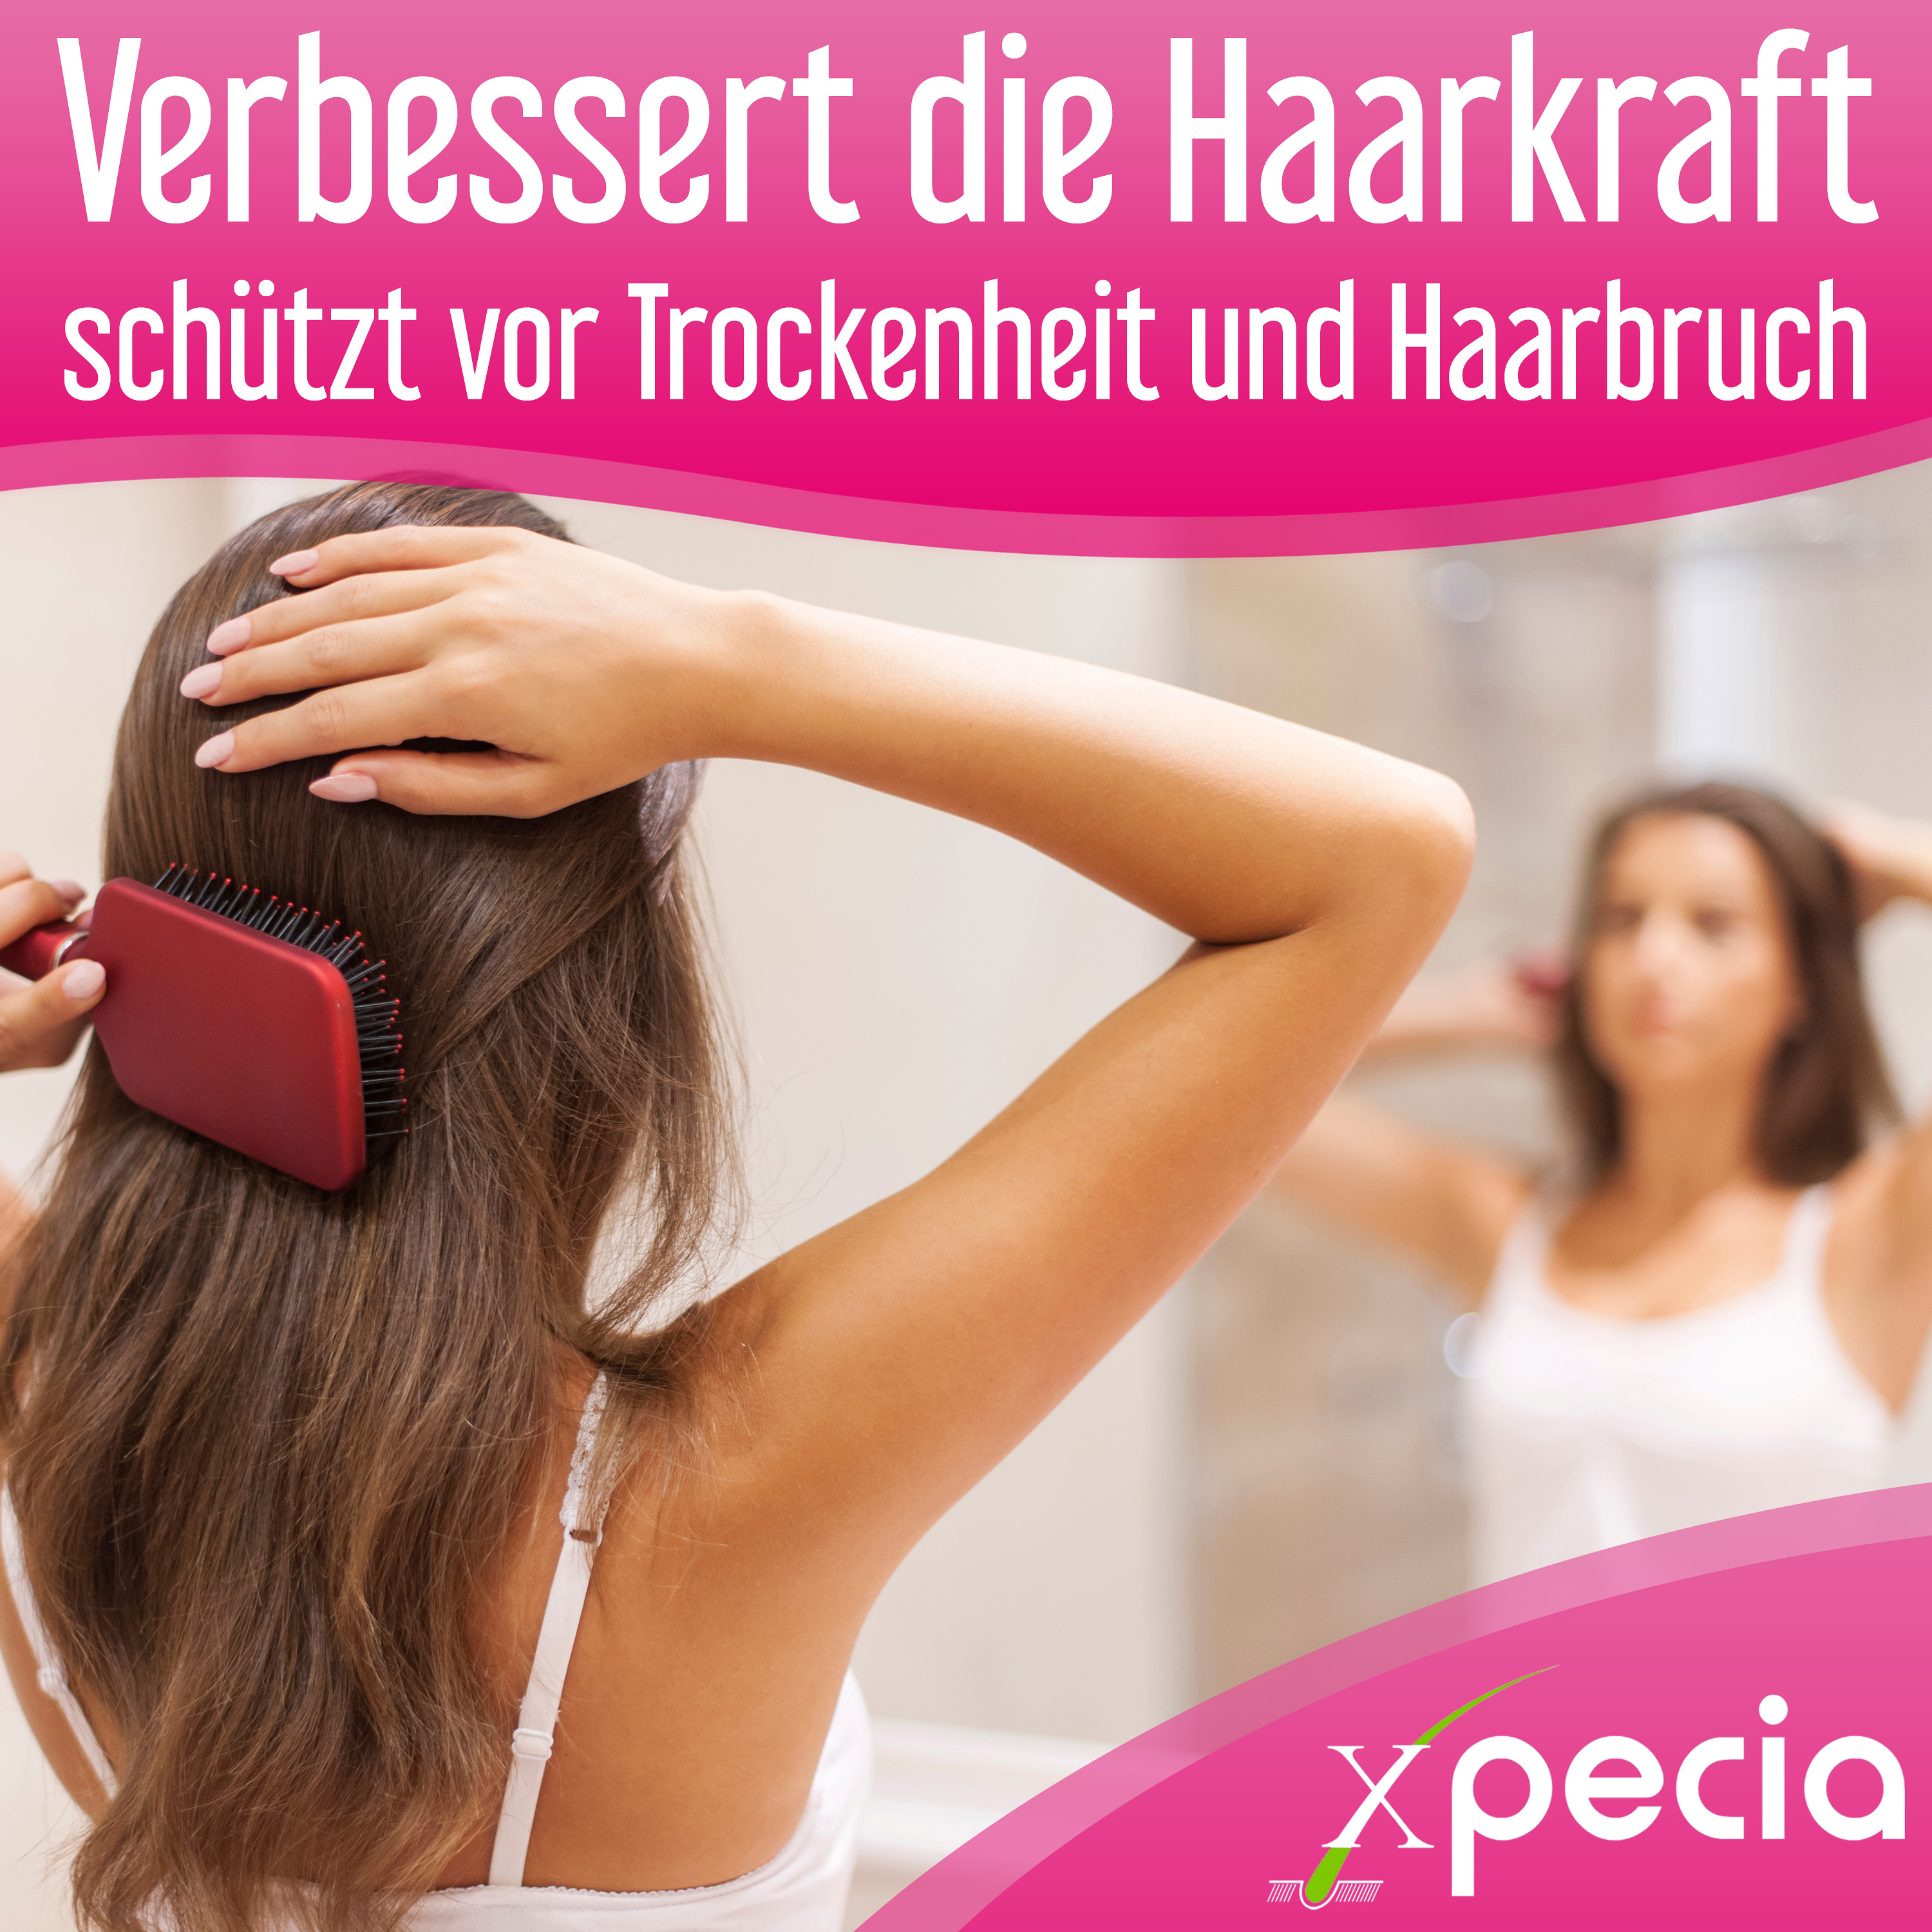 Xpecia gegen Haarausfall bei Frauen 1 Stück